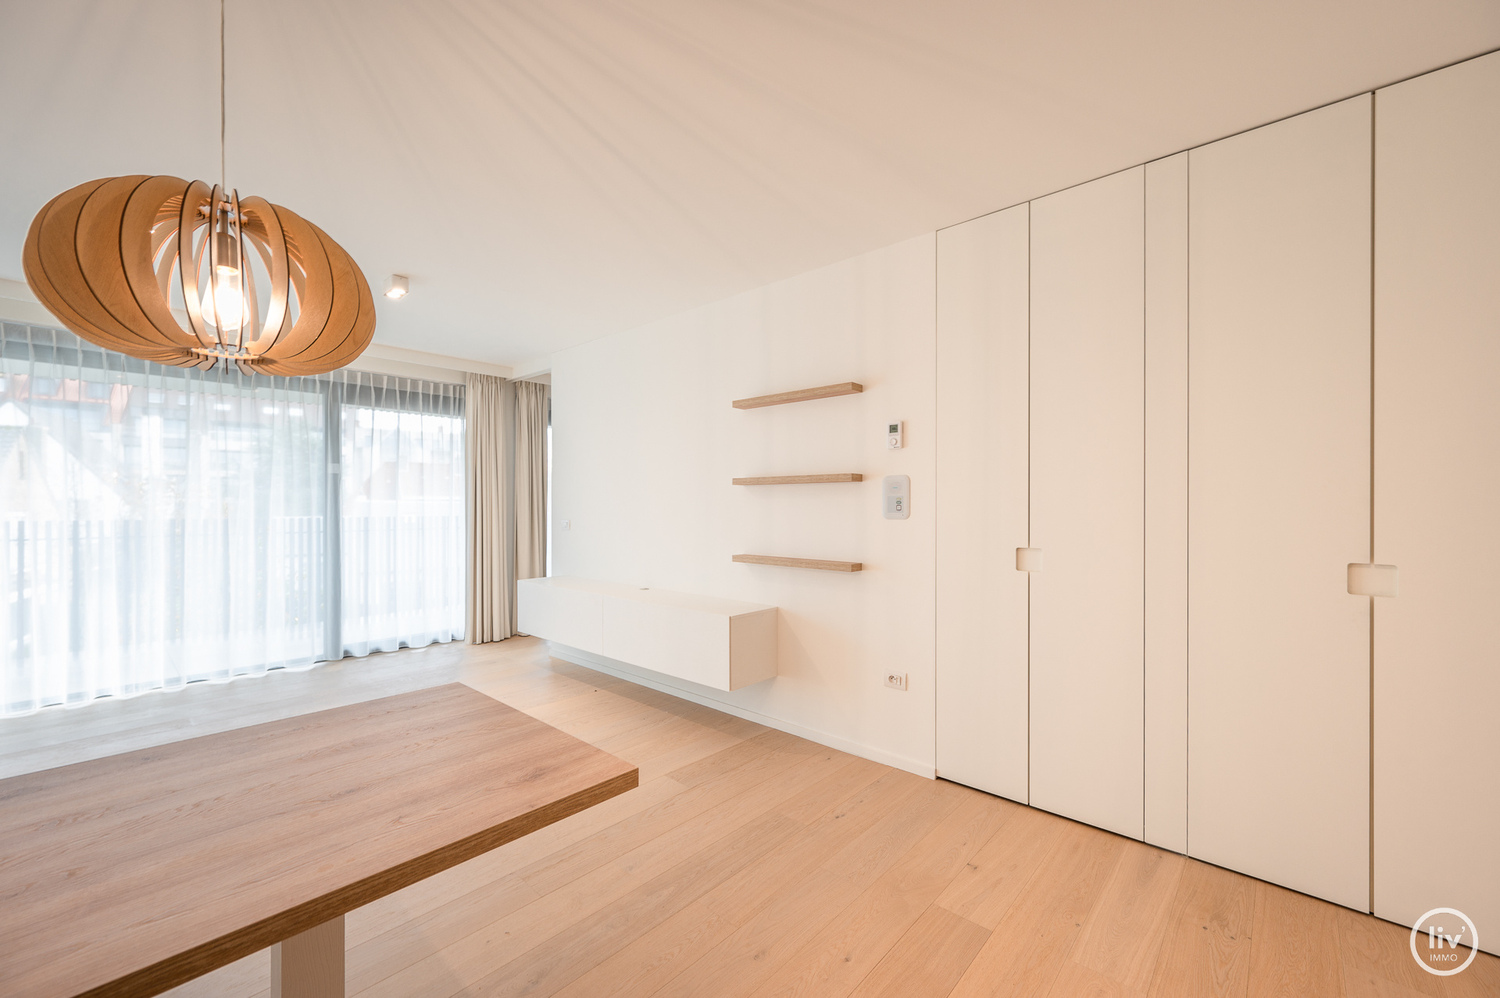 SERVICEFLAT: Lichtrijk 1-slaapkamer appartement nabij de Konings &amp; Lippenslaan in de Residentie Cypres. 